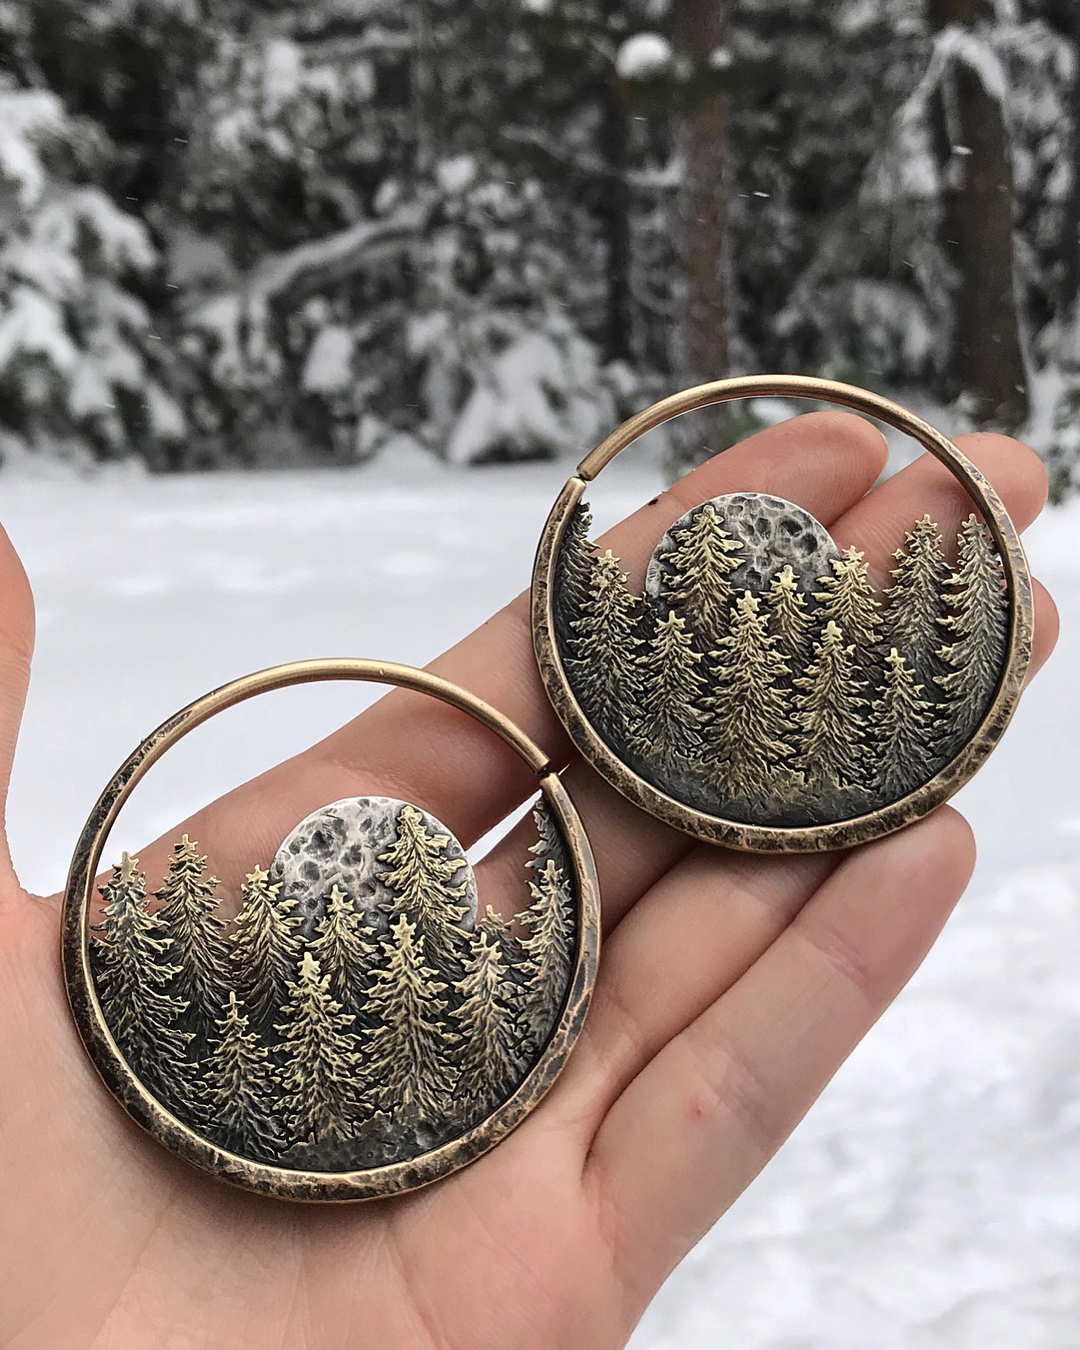 Full Moon Pine Forest earrings